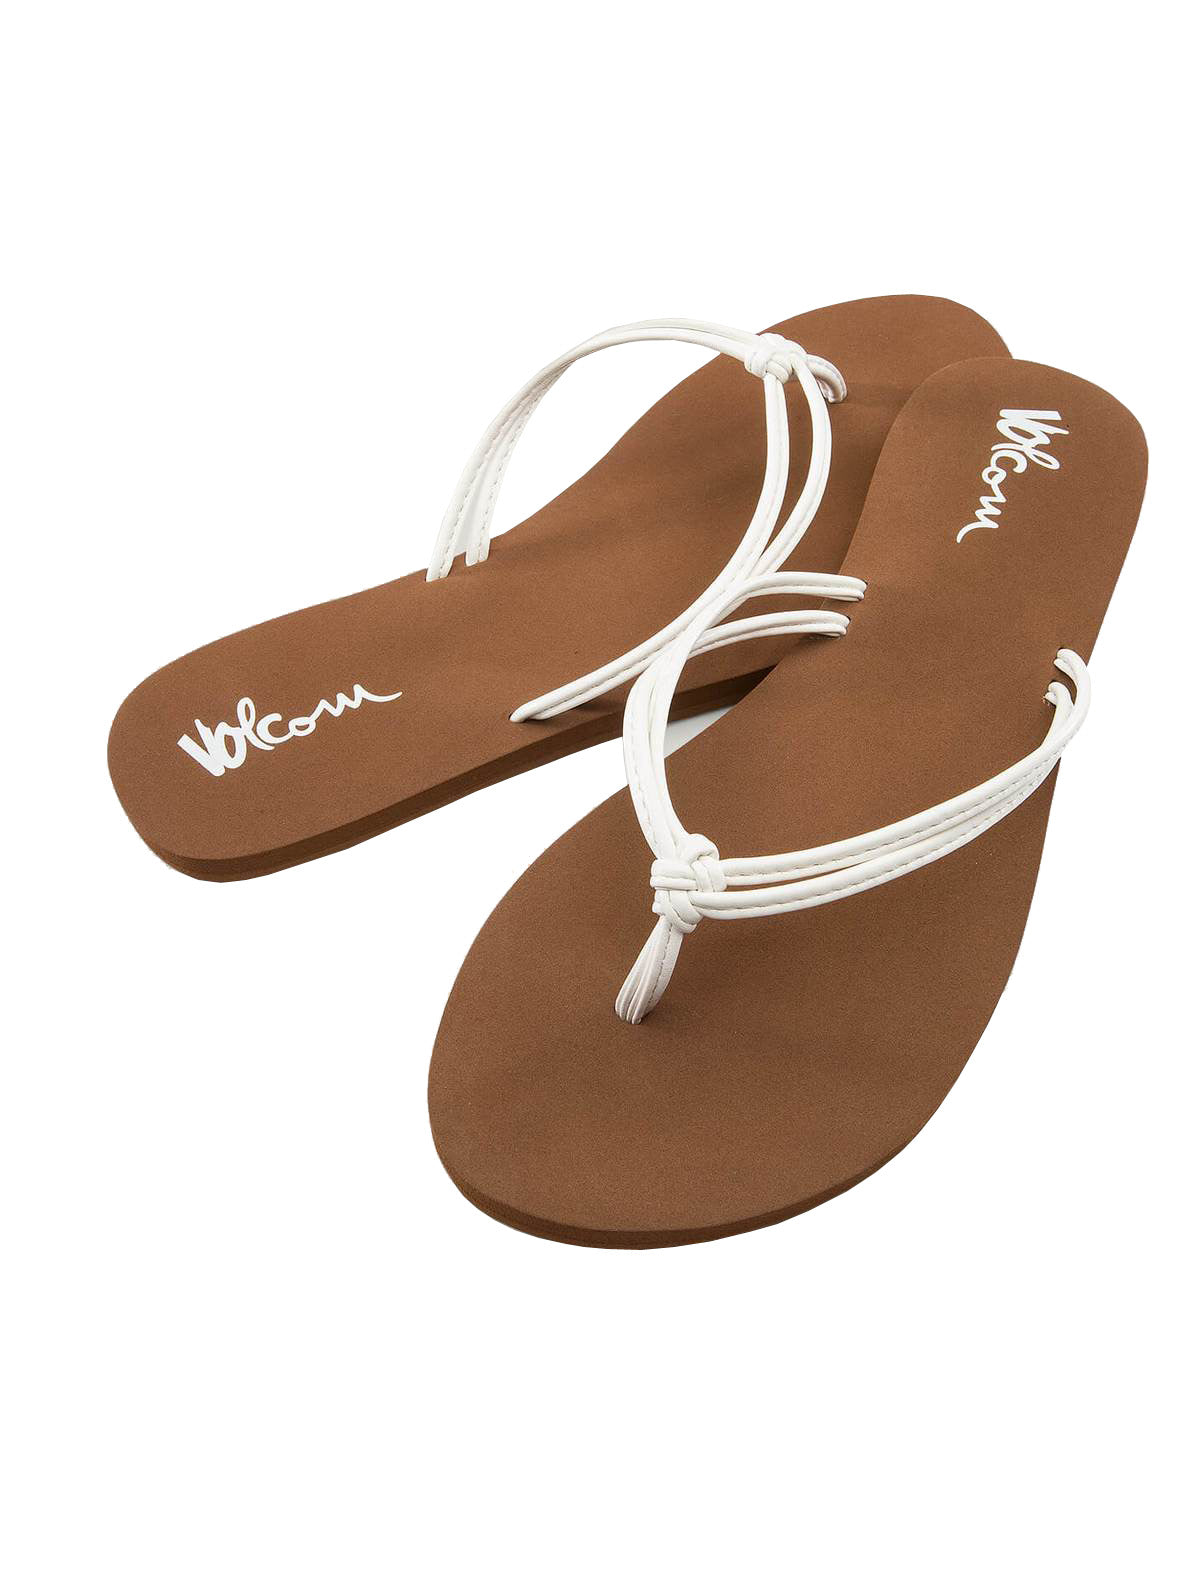 Volcom Forever and Ever 2 Womens Sandal WHT-White 9